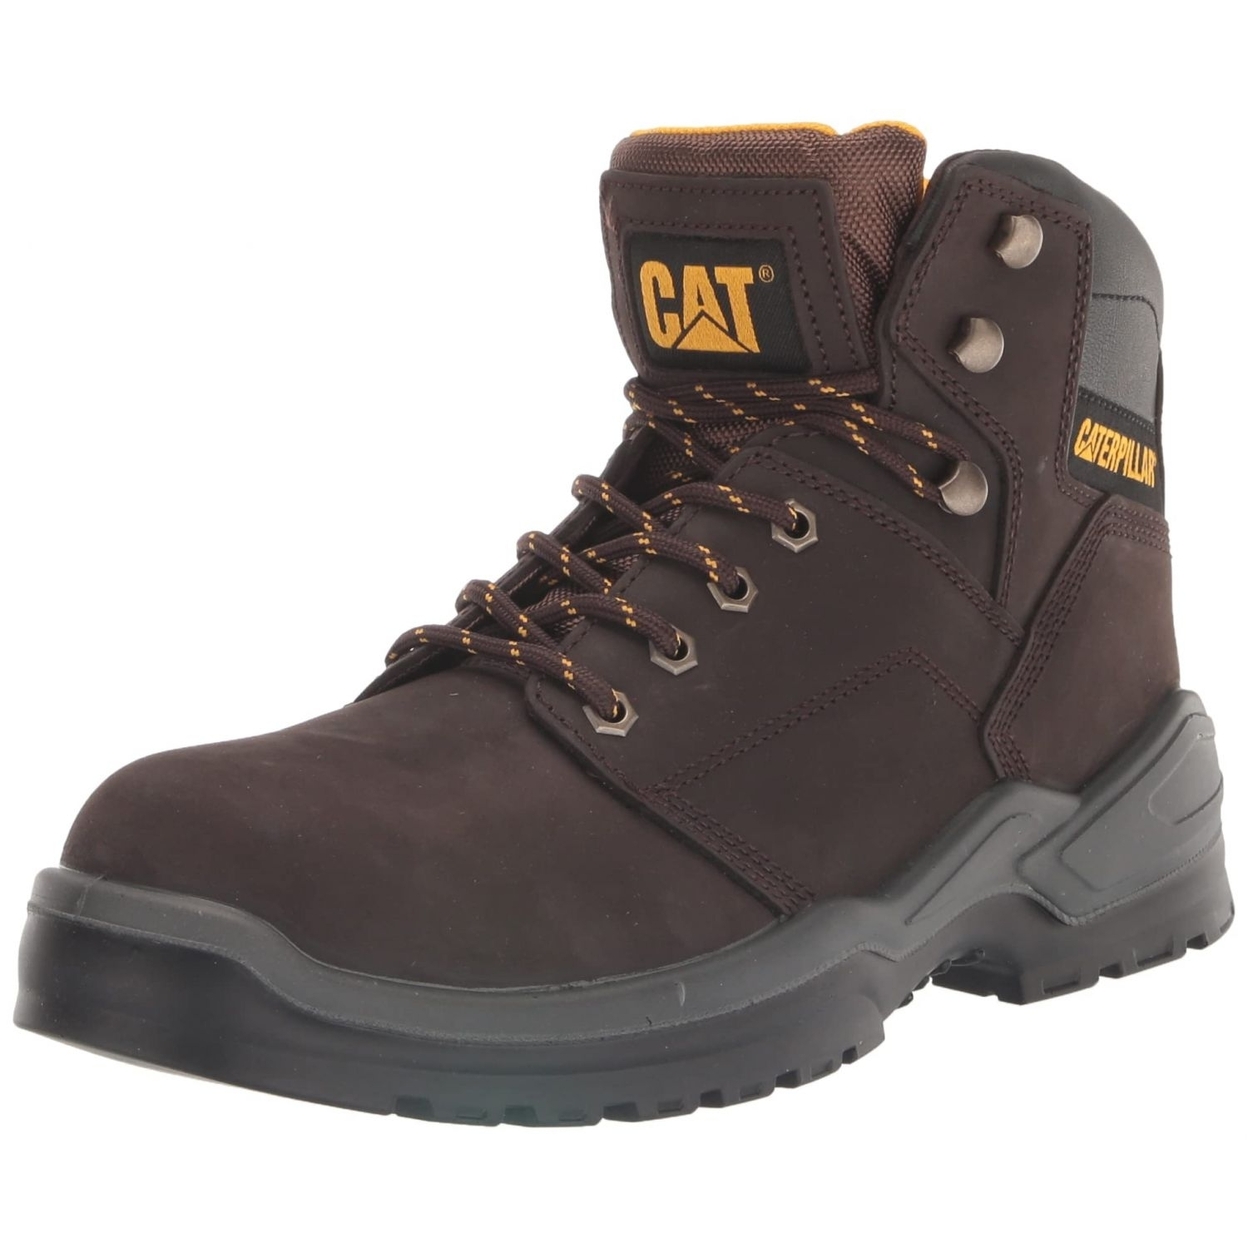 CAT Men's Striver Steel Toe Industrial Boot BROWN - BROWN, 9 Wide